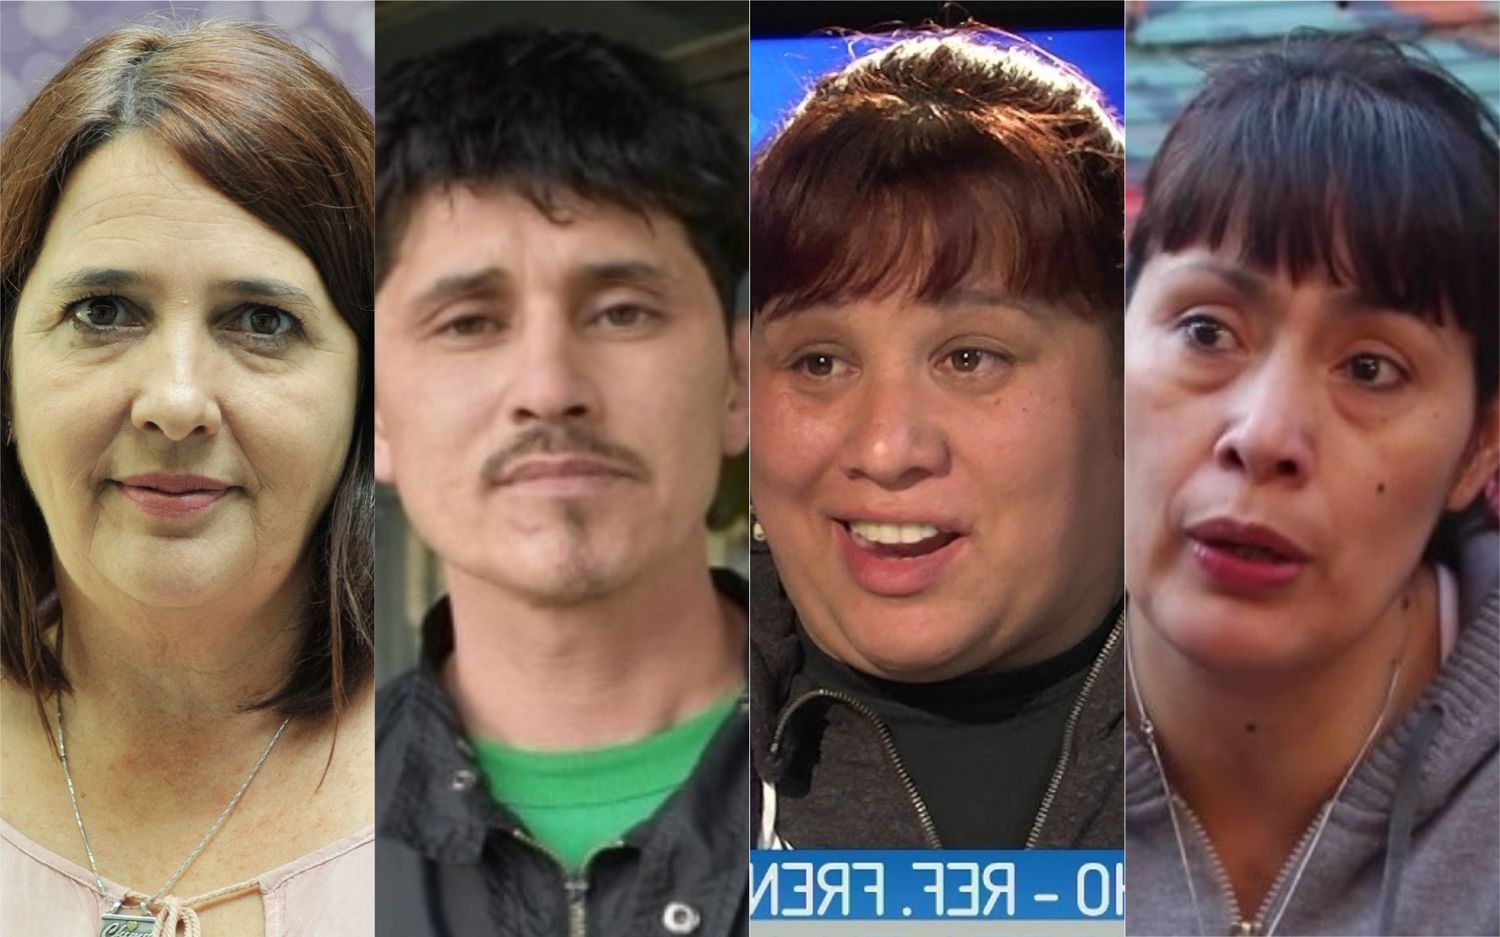 Las duras historias detrás de los candidatos extrapartidarios en la Provincia de Buenos Aires